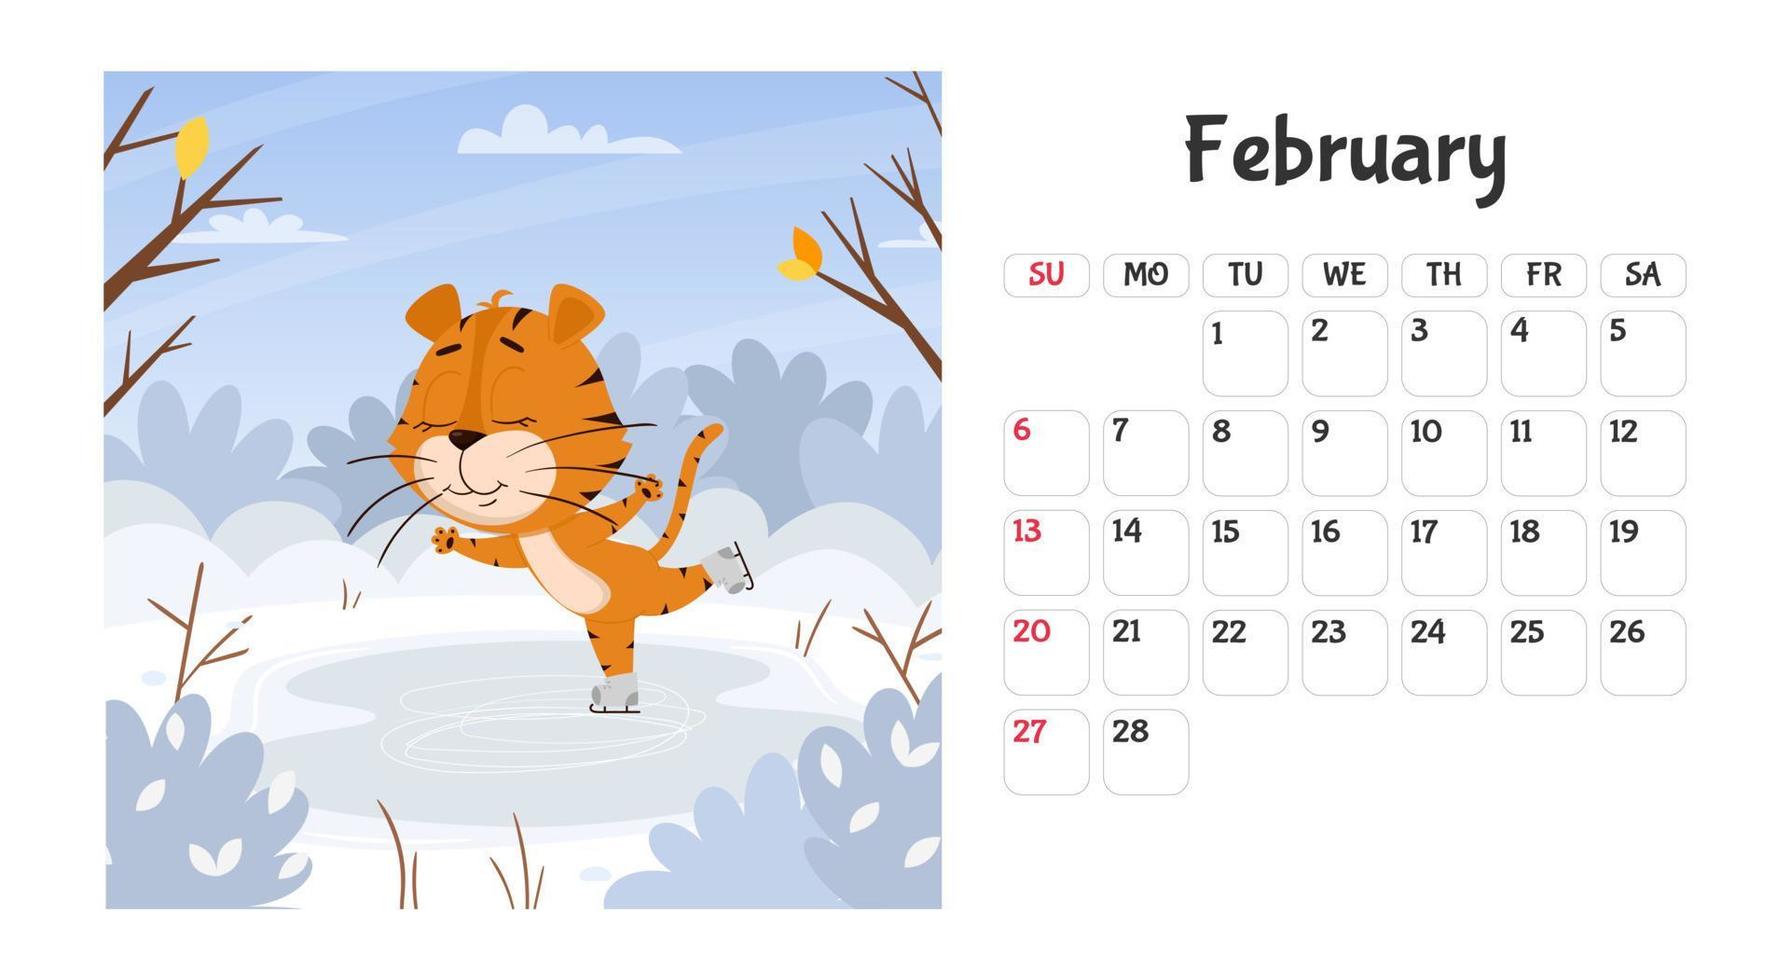 horizontale Desktop-Kalenderseitenvorlage für Februar 2022 mit einem Cartoon-Tiger-Symbol des chinesischen Jahres. die Woche beginnt am Sonntag. Tiger skaten vektor